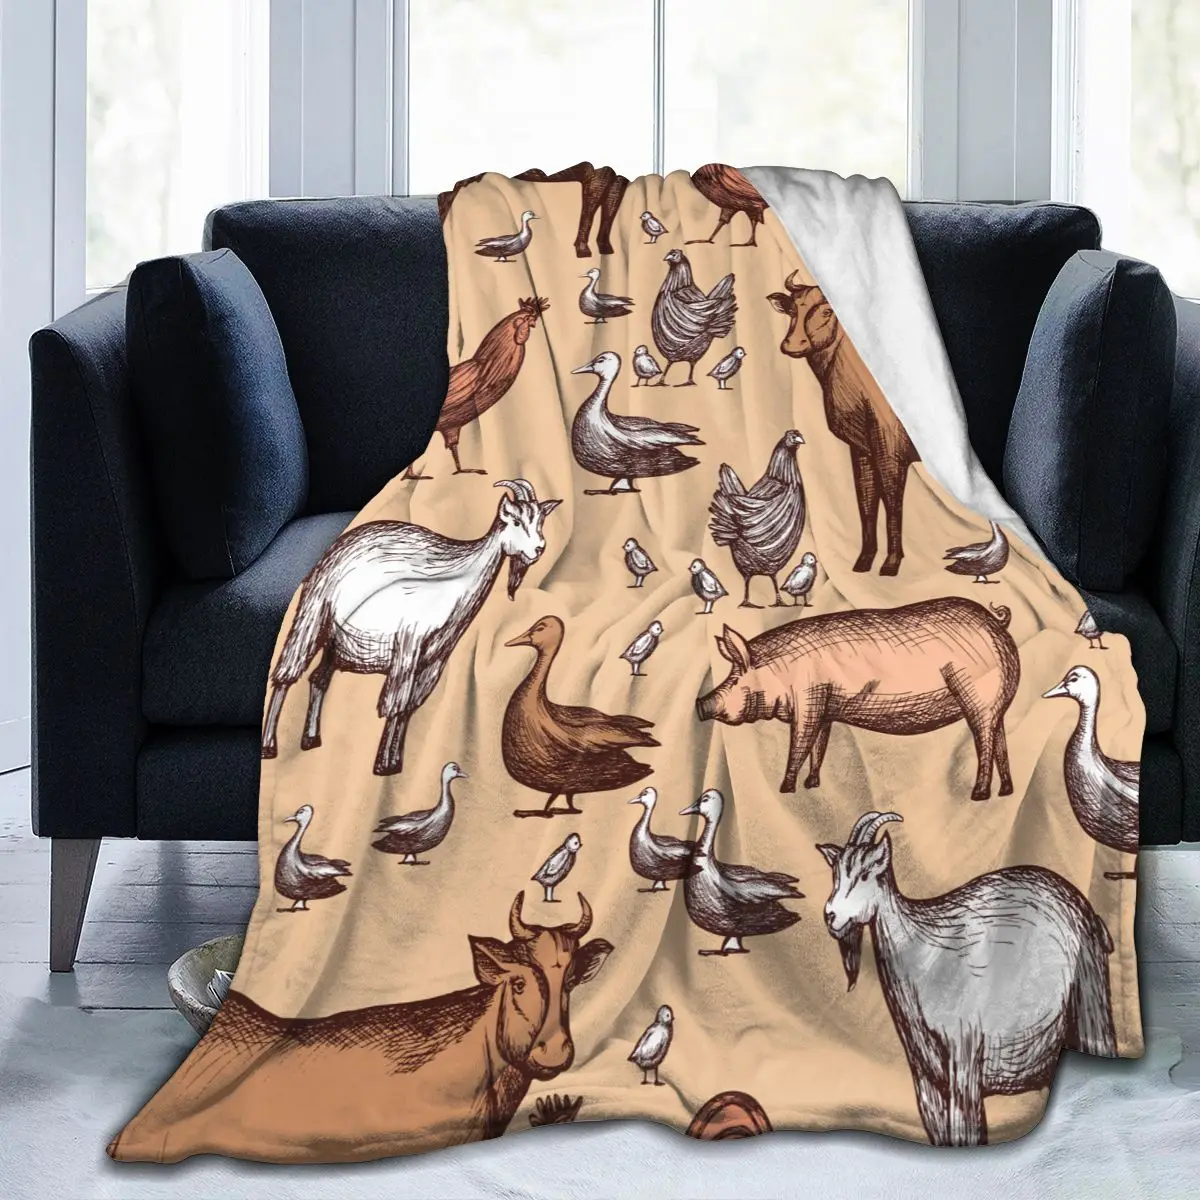 

Фланелевое Одеяло с животными, легкий тонкий теплый мягкий плед для механической стирки, дивана, кровати, путешествий, лоскутное шитье